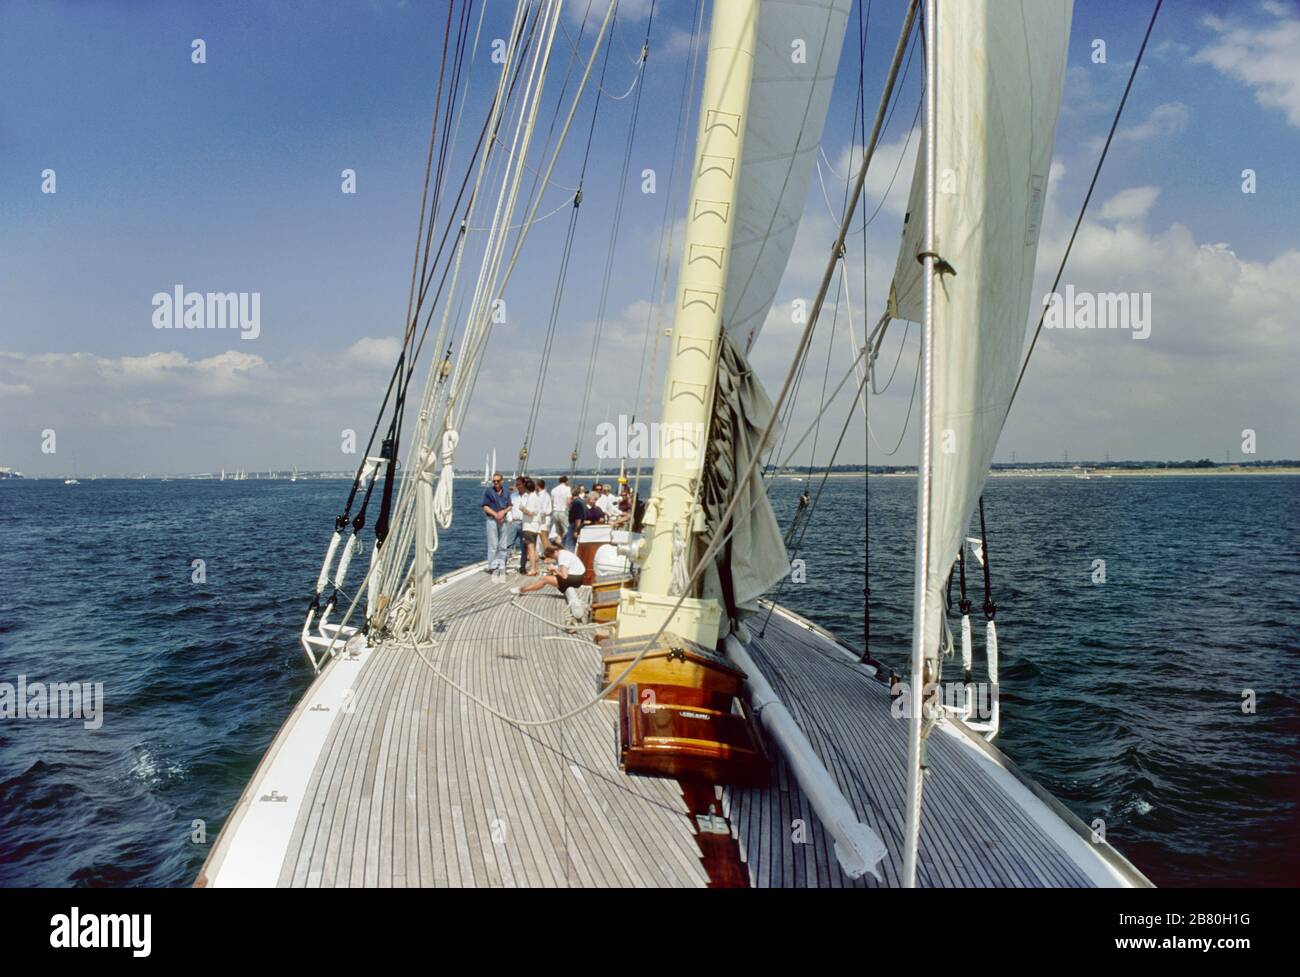 Le pont qui s'est tourné vers l'arrière à bord du yacht J Class 'Velsheda' après la première repose, naviguant dans le Solent, Hampshire, Angleterre, Royaume-Uni, été 1991. Archiver la photo du film de transparence Banque D'Images